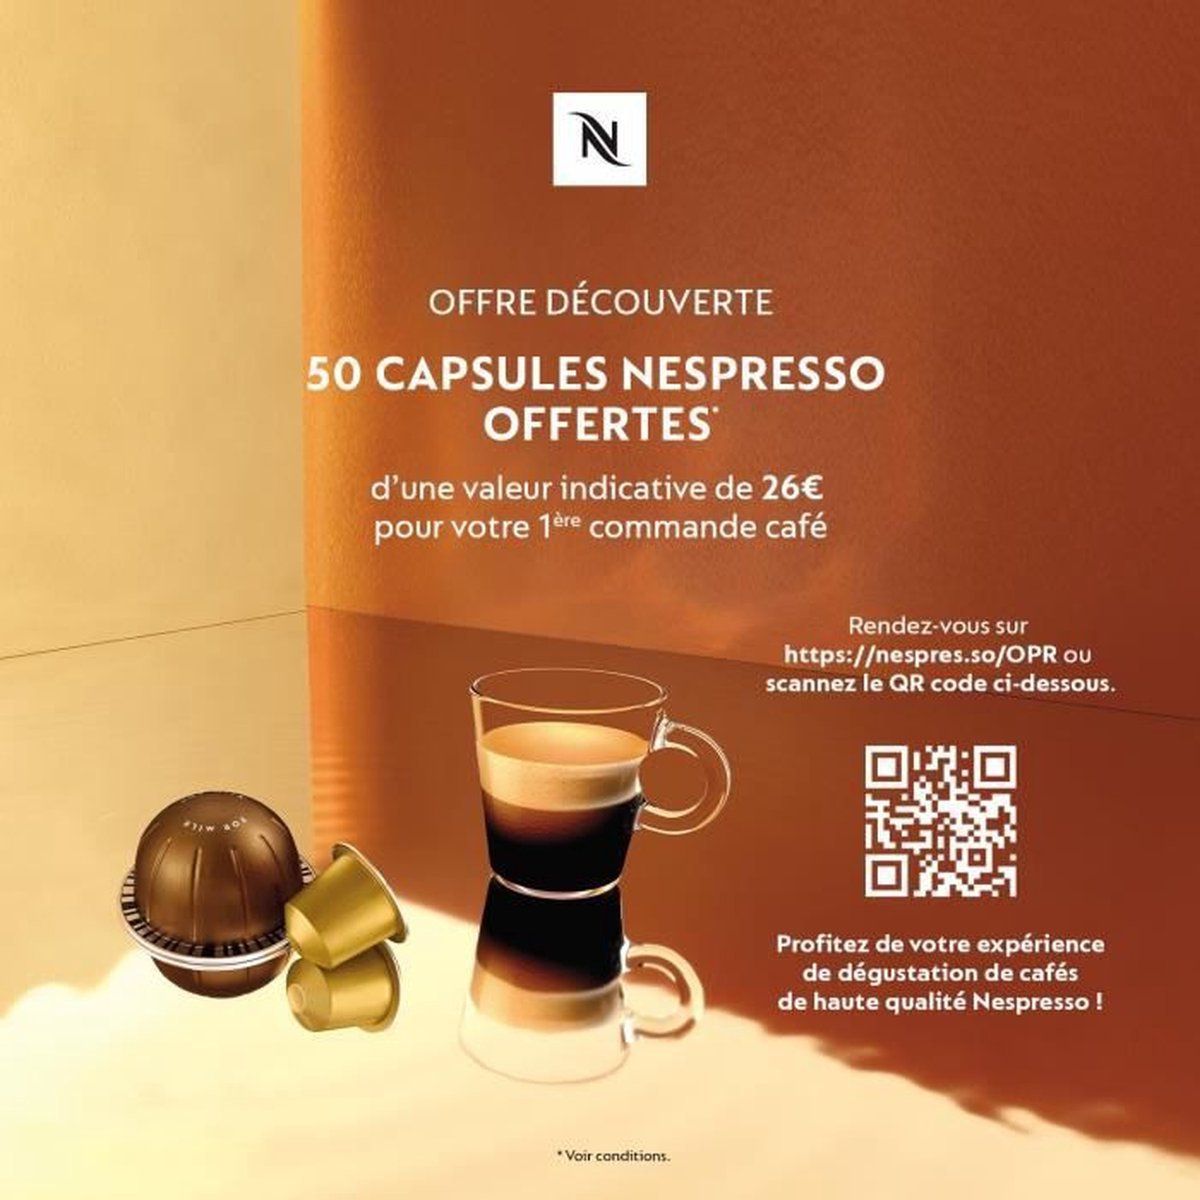 Krups Nespresso VERTUO Pop XN9201 Cafetière à Capsules, Machine à